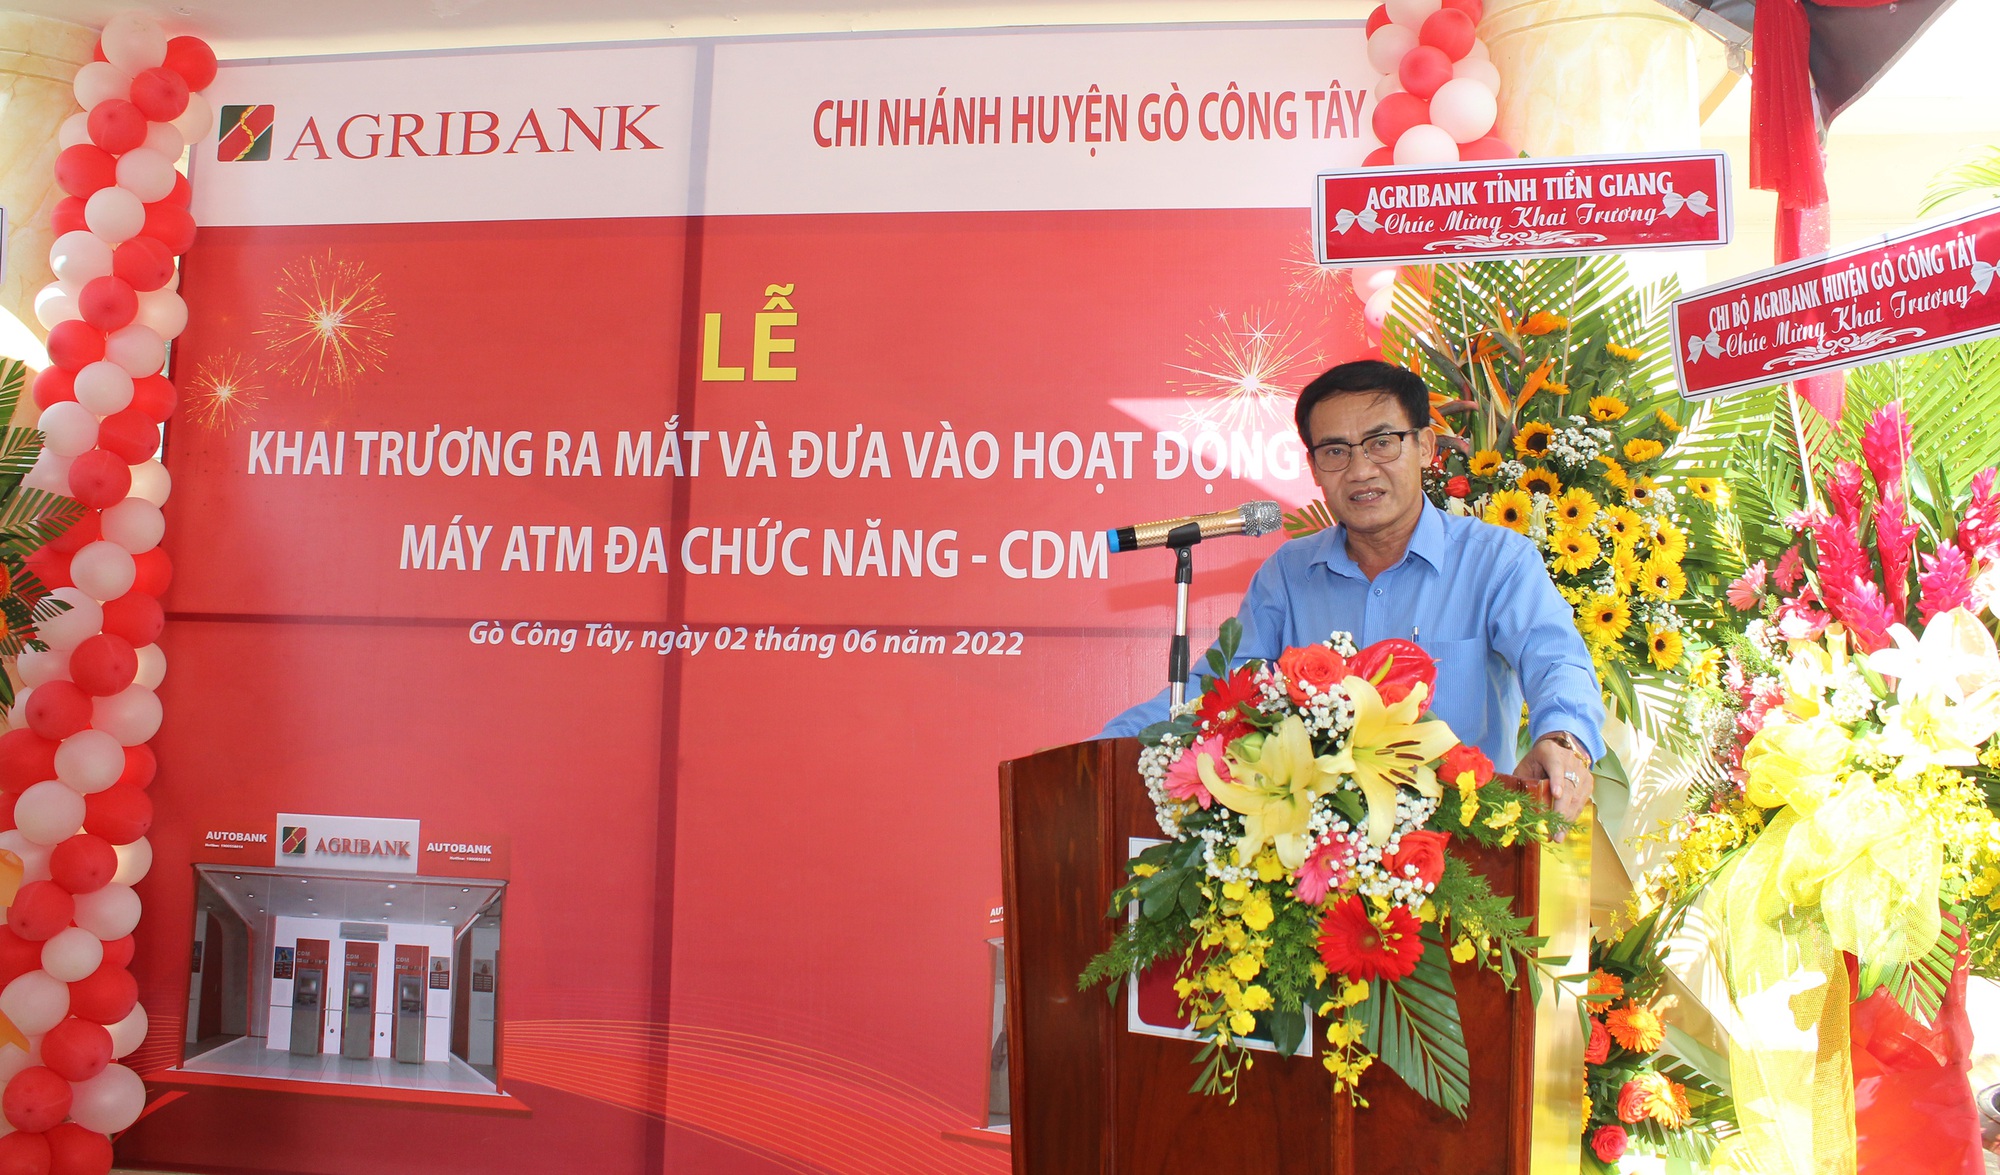 Lần đầu đưa ATM đa chức năng phục vụ người dân 2 huyện ở Tiền Giang - Ảnh 3.